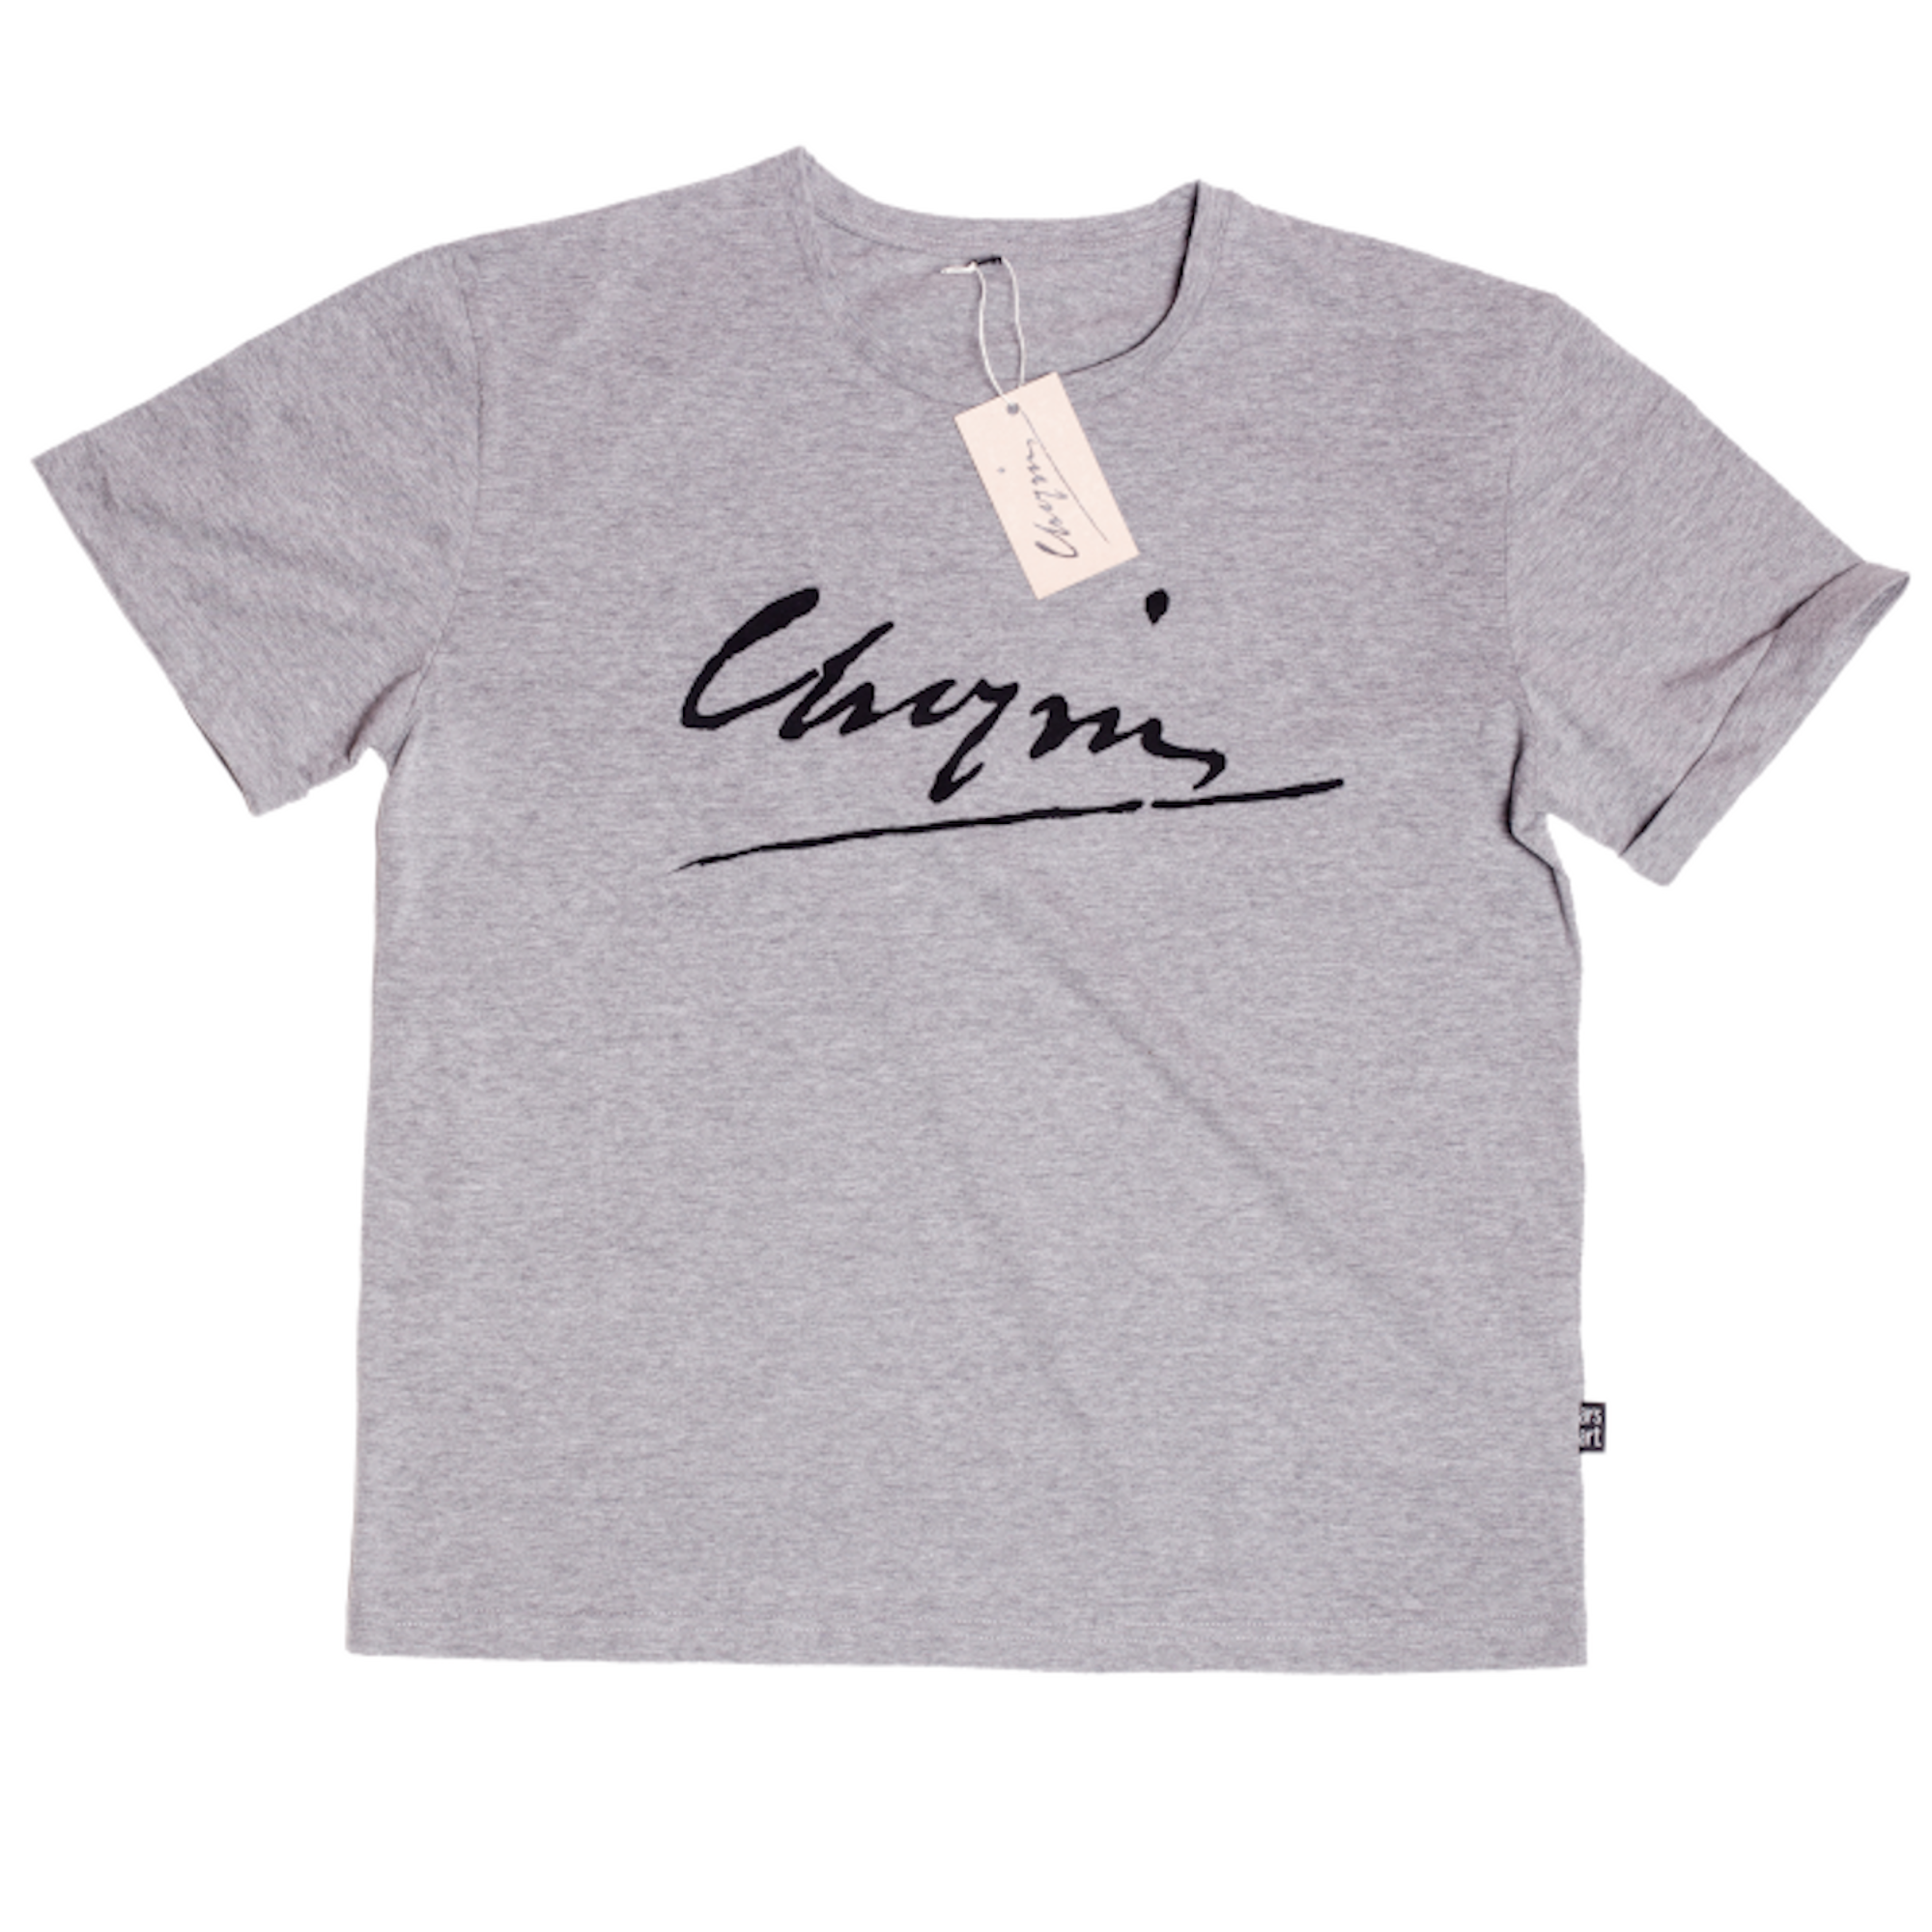 Chopin T-Shirt 1